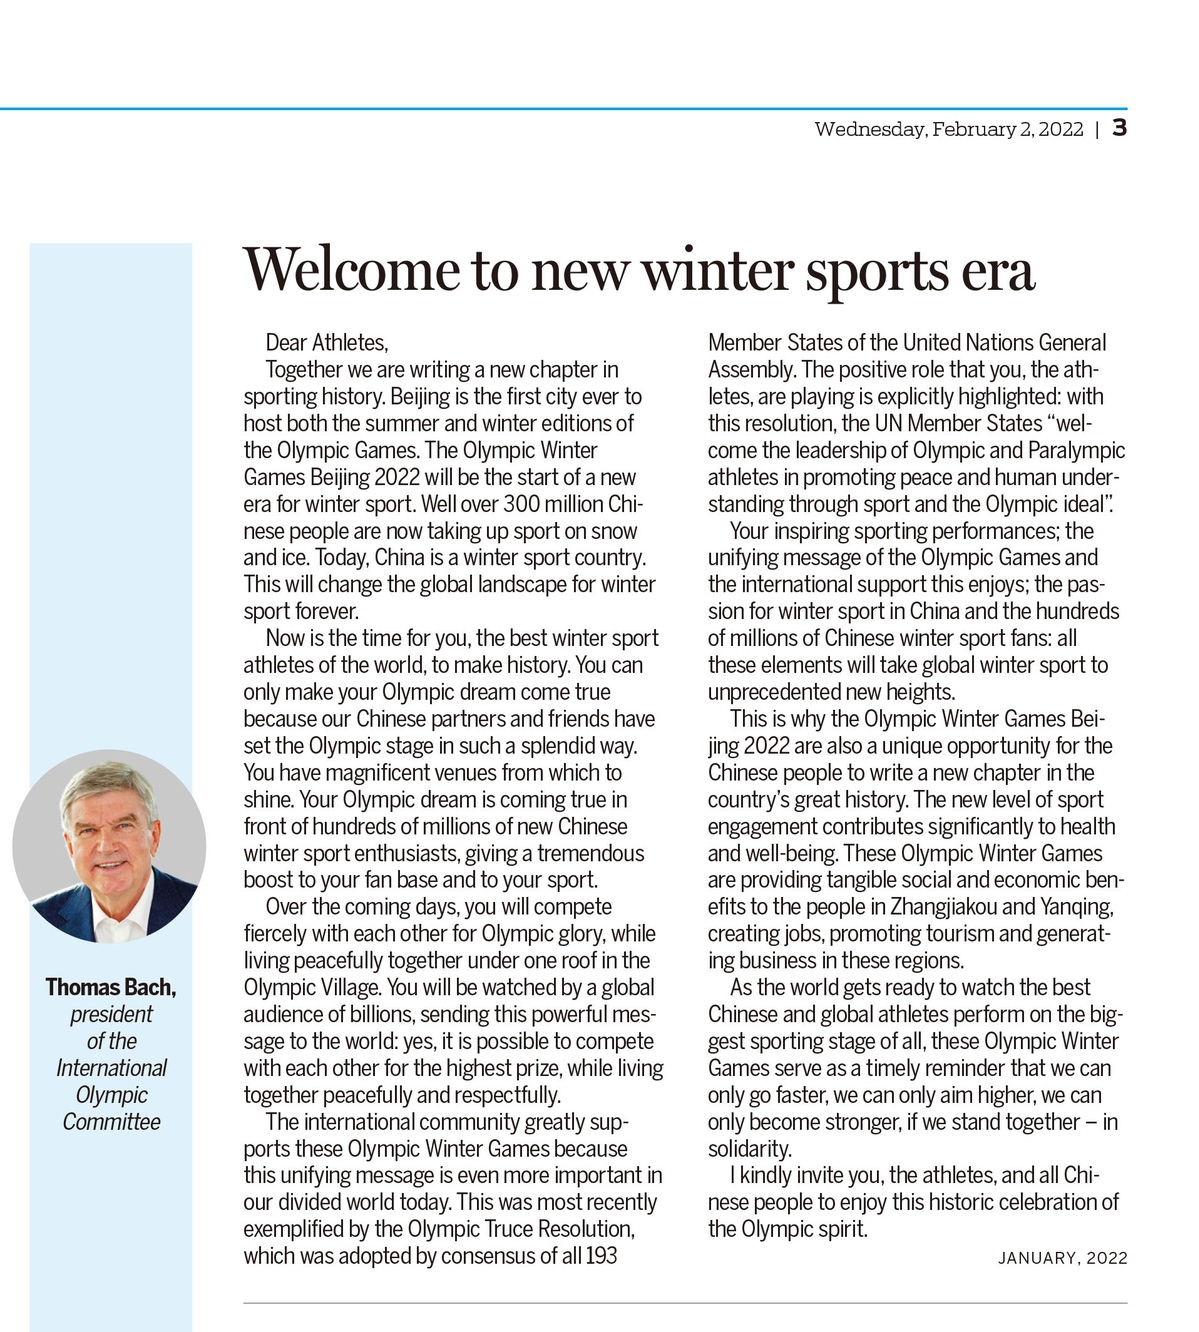 国际奥委会主席巴赫致信冬奥会刊：欢迎来到冰雪运动新时代